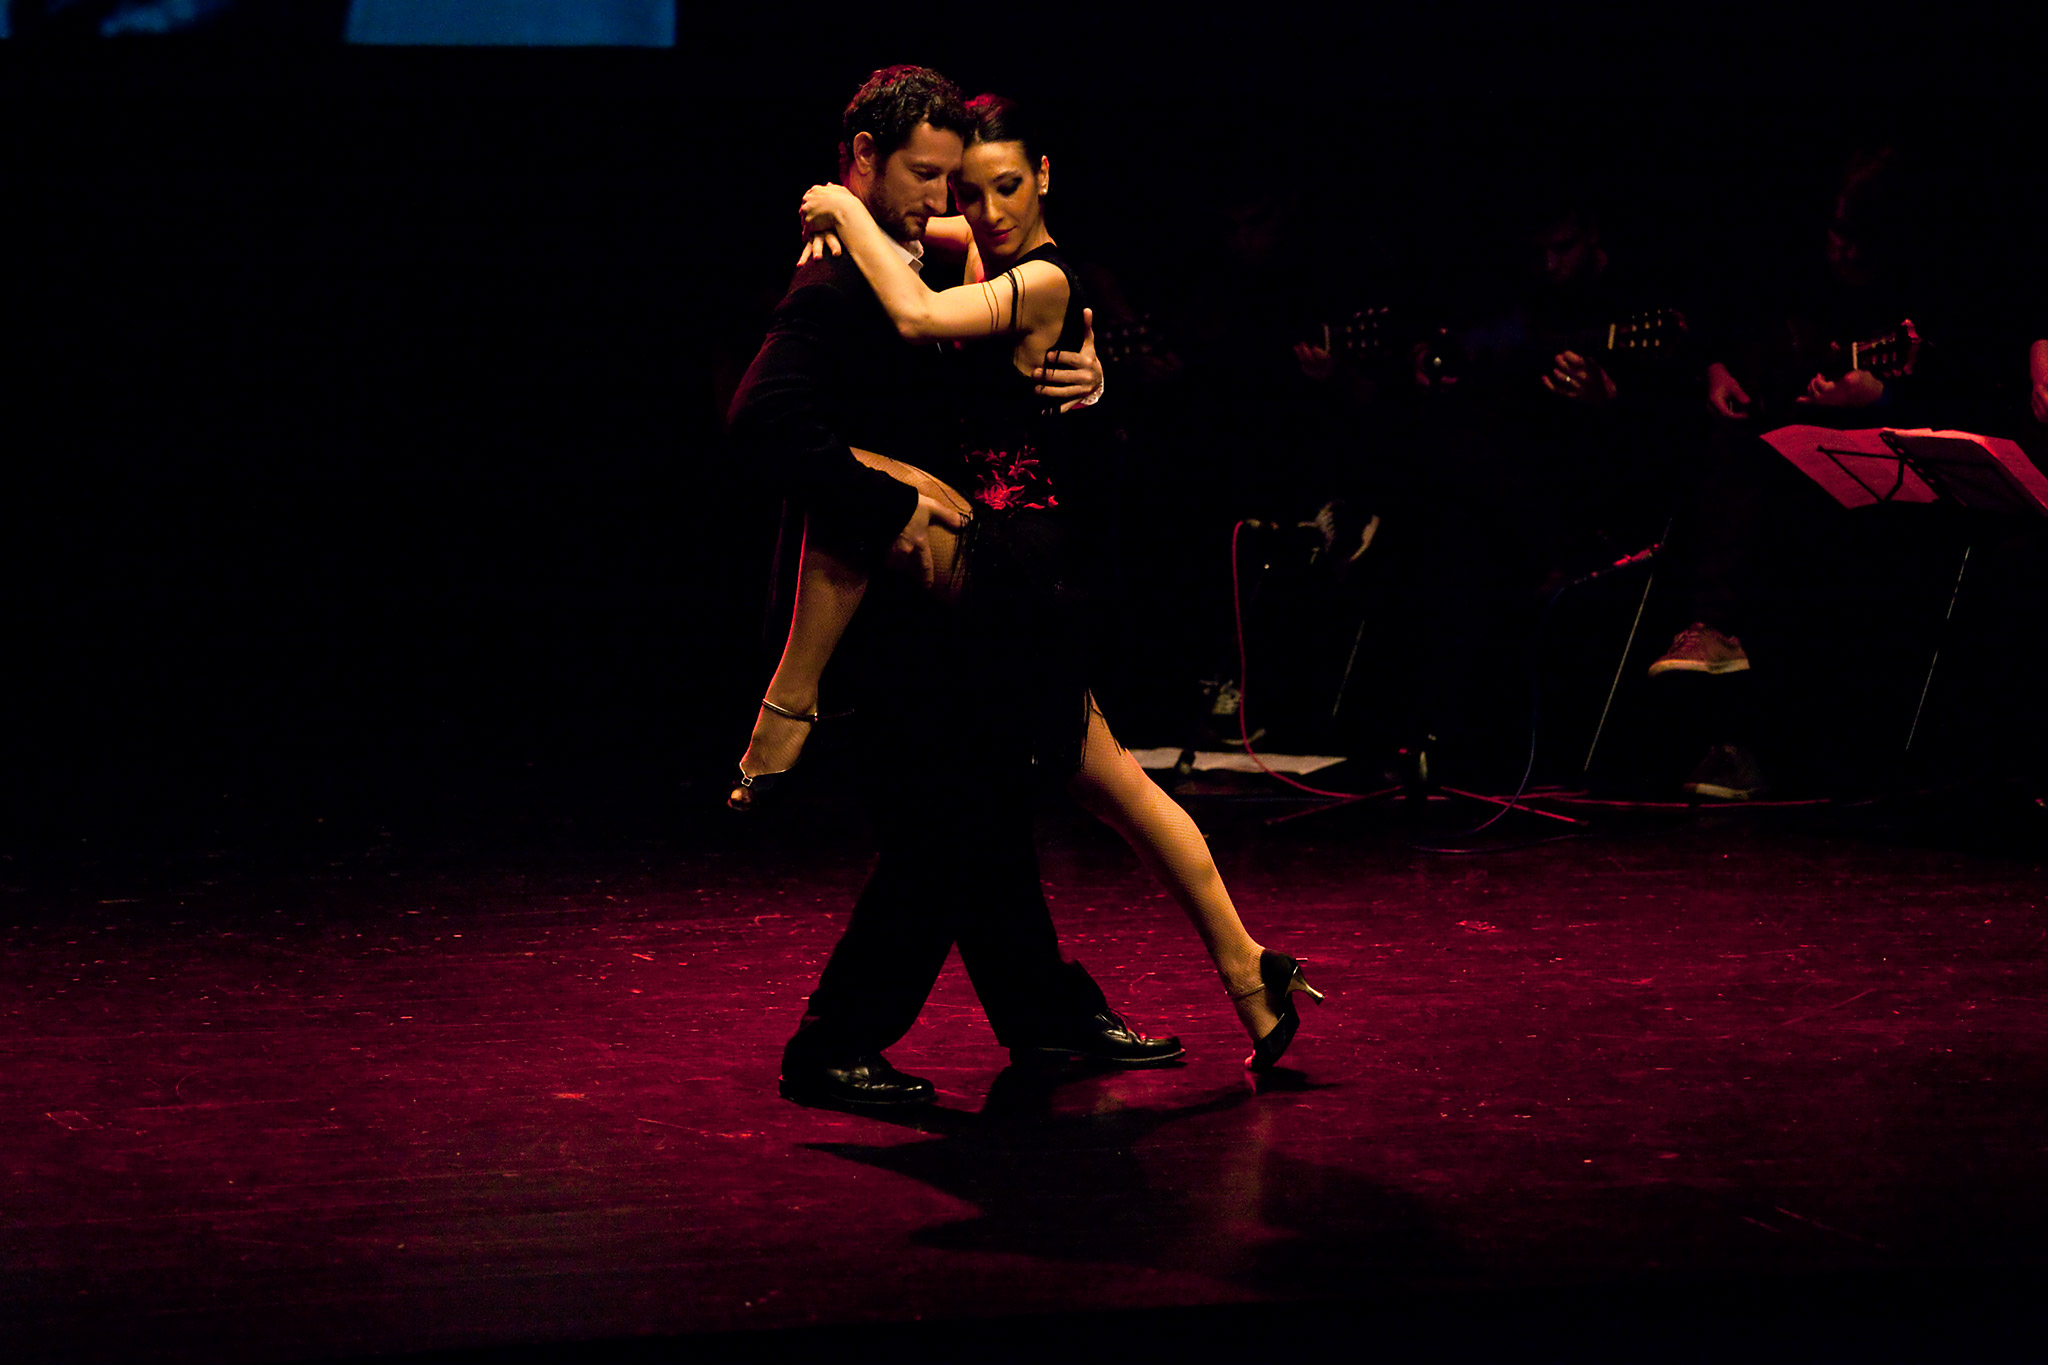 Inicio - image MG_2386 on http://danzasturias.es